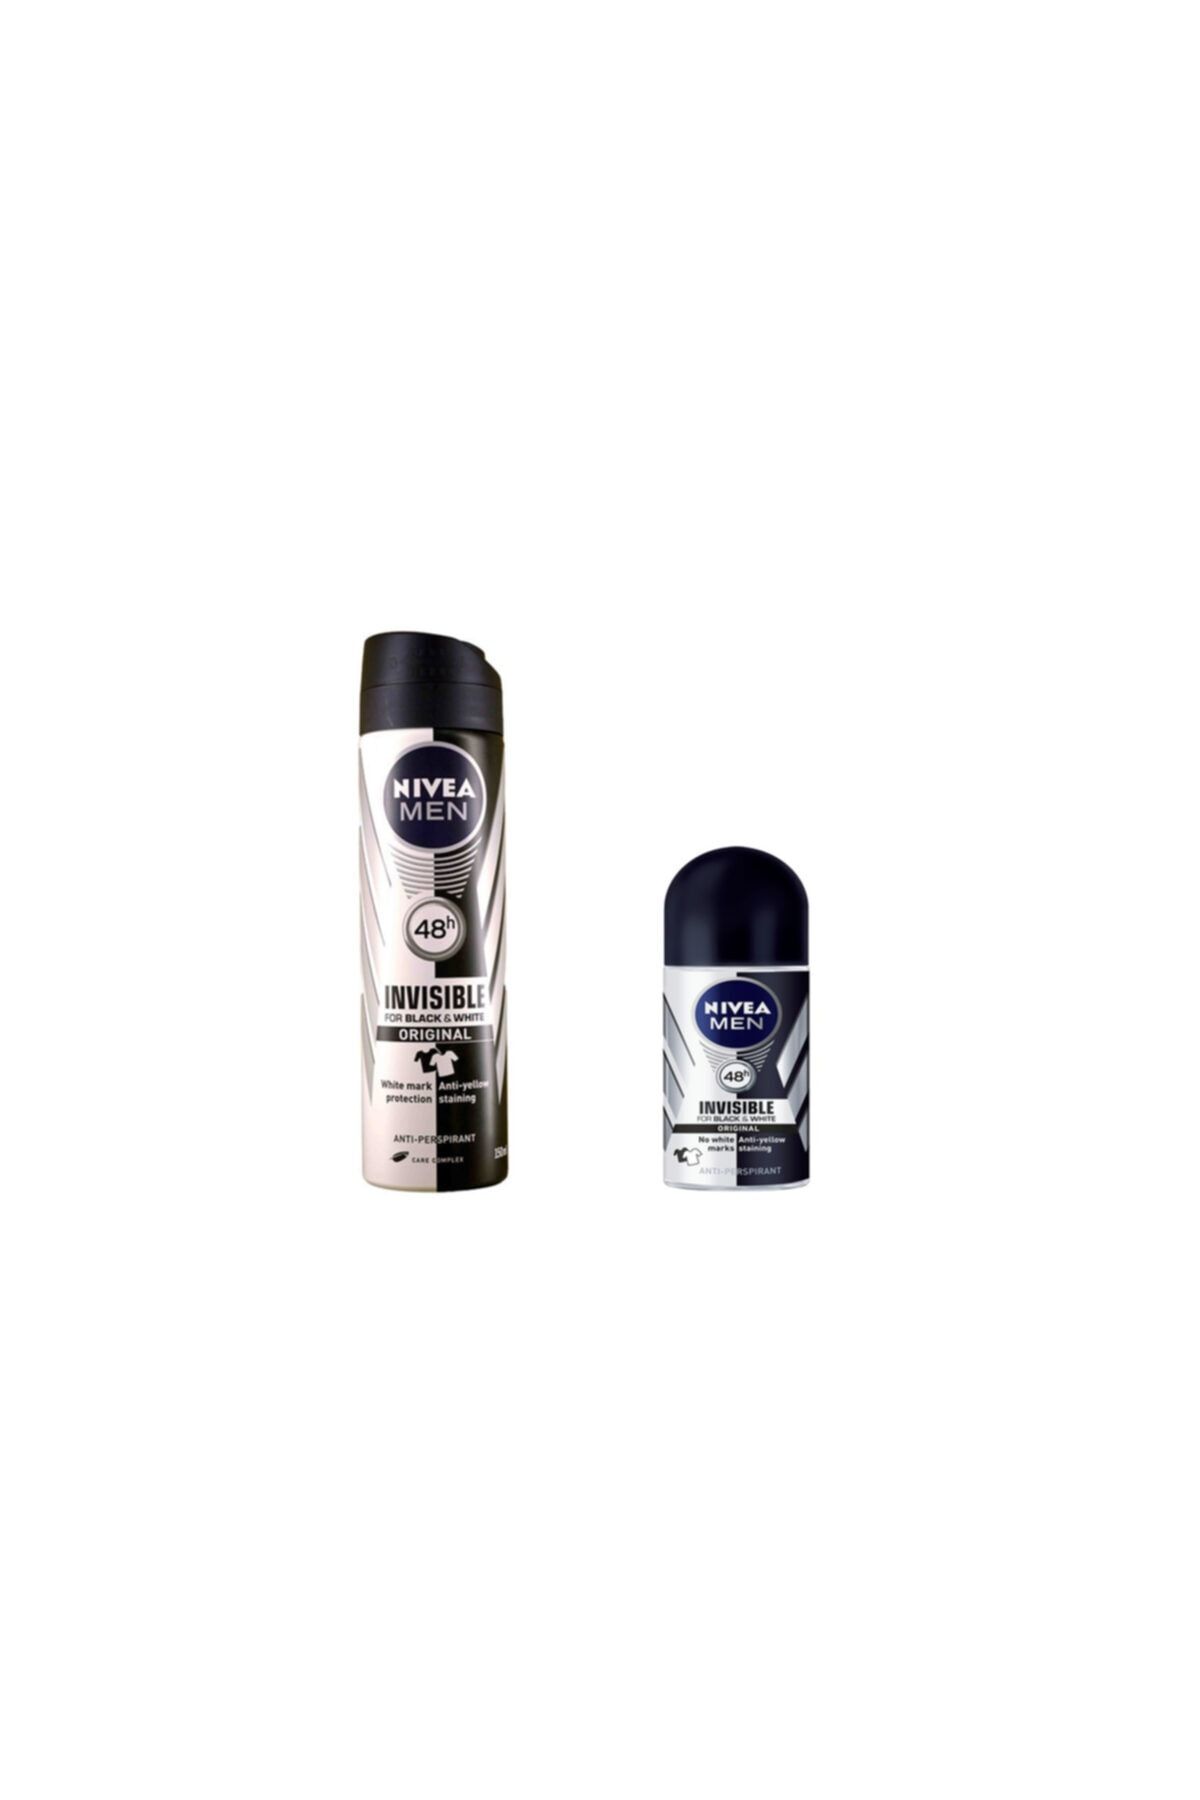 NIVEA Men Invisible Black&white Deodorant 150ml + Men Invisible Black&white Roll On 25ml Set